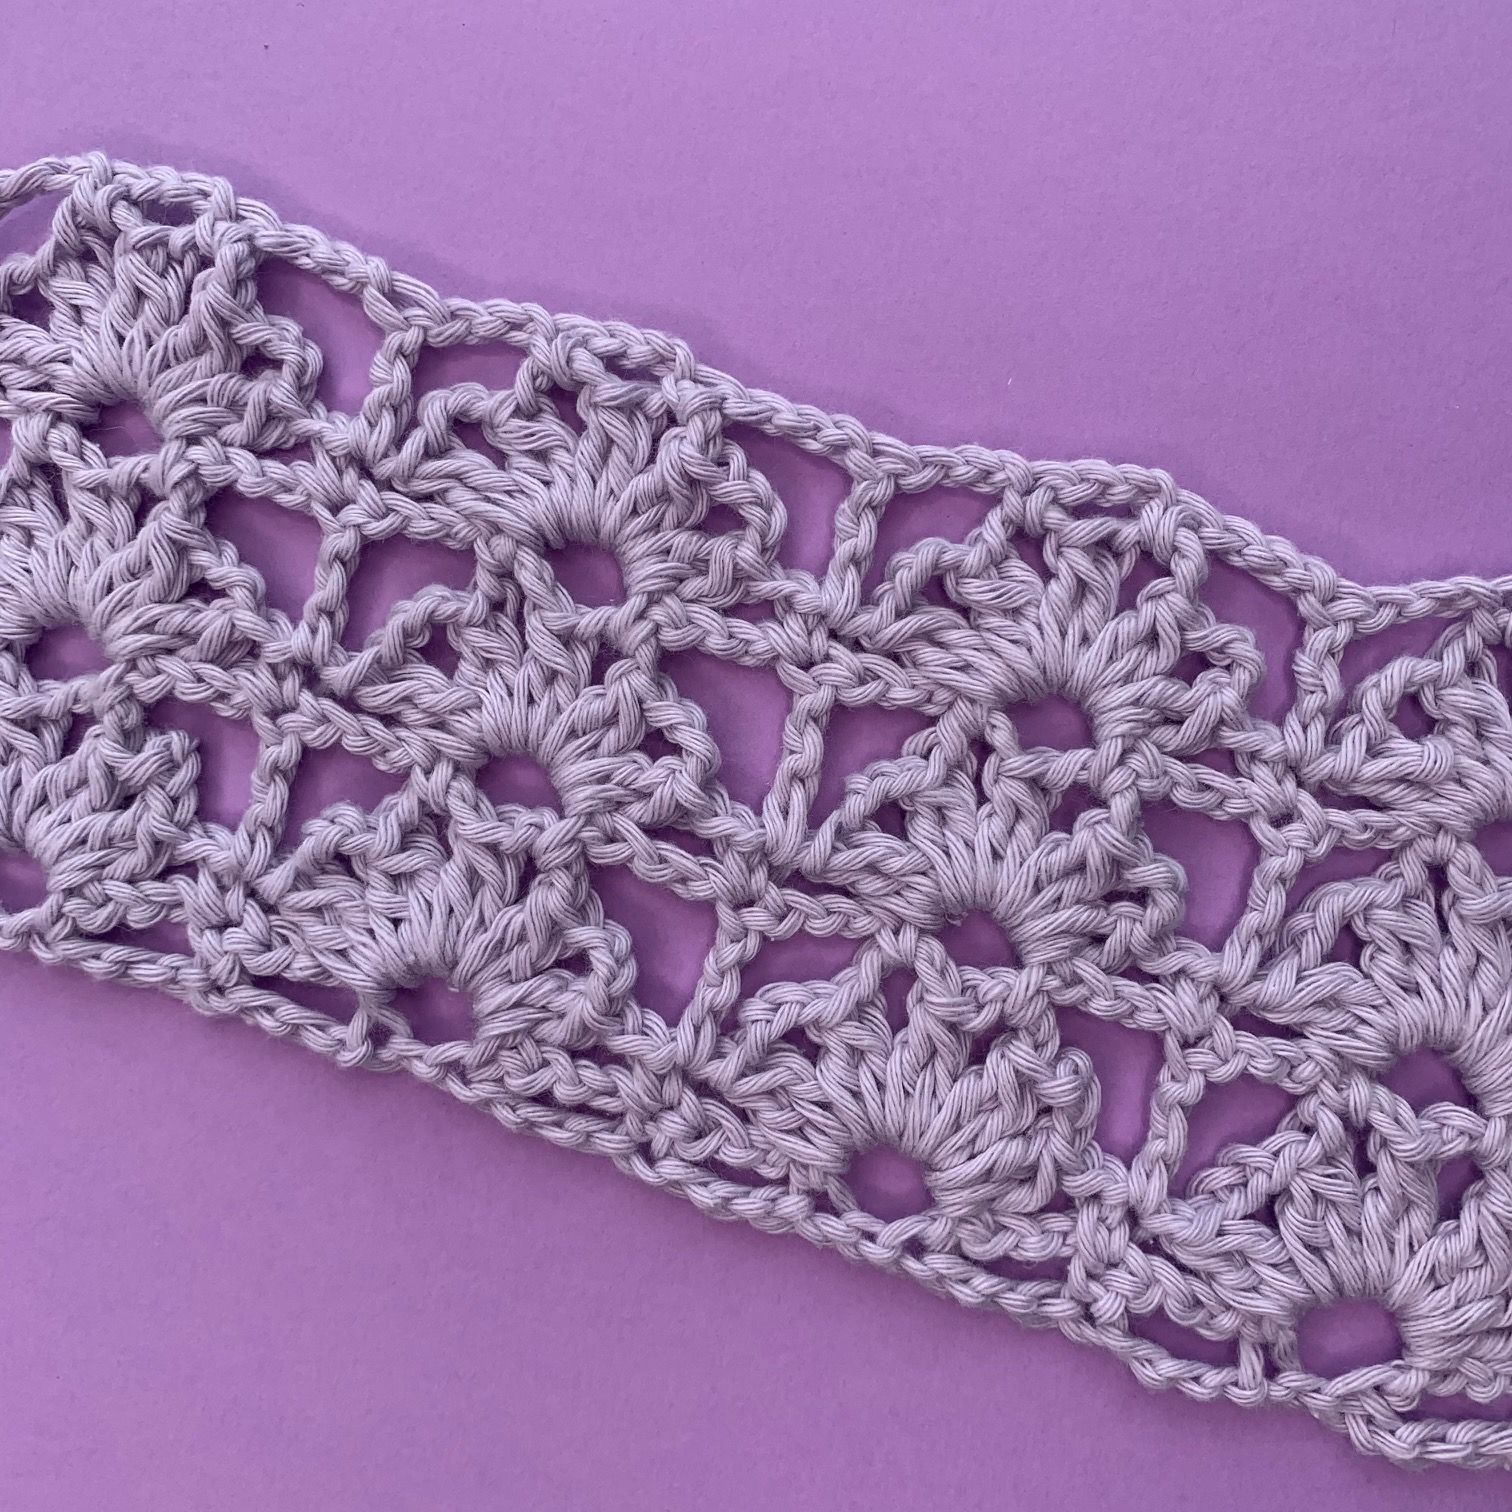 Crochet Flame Stitch Pattern